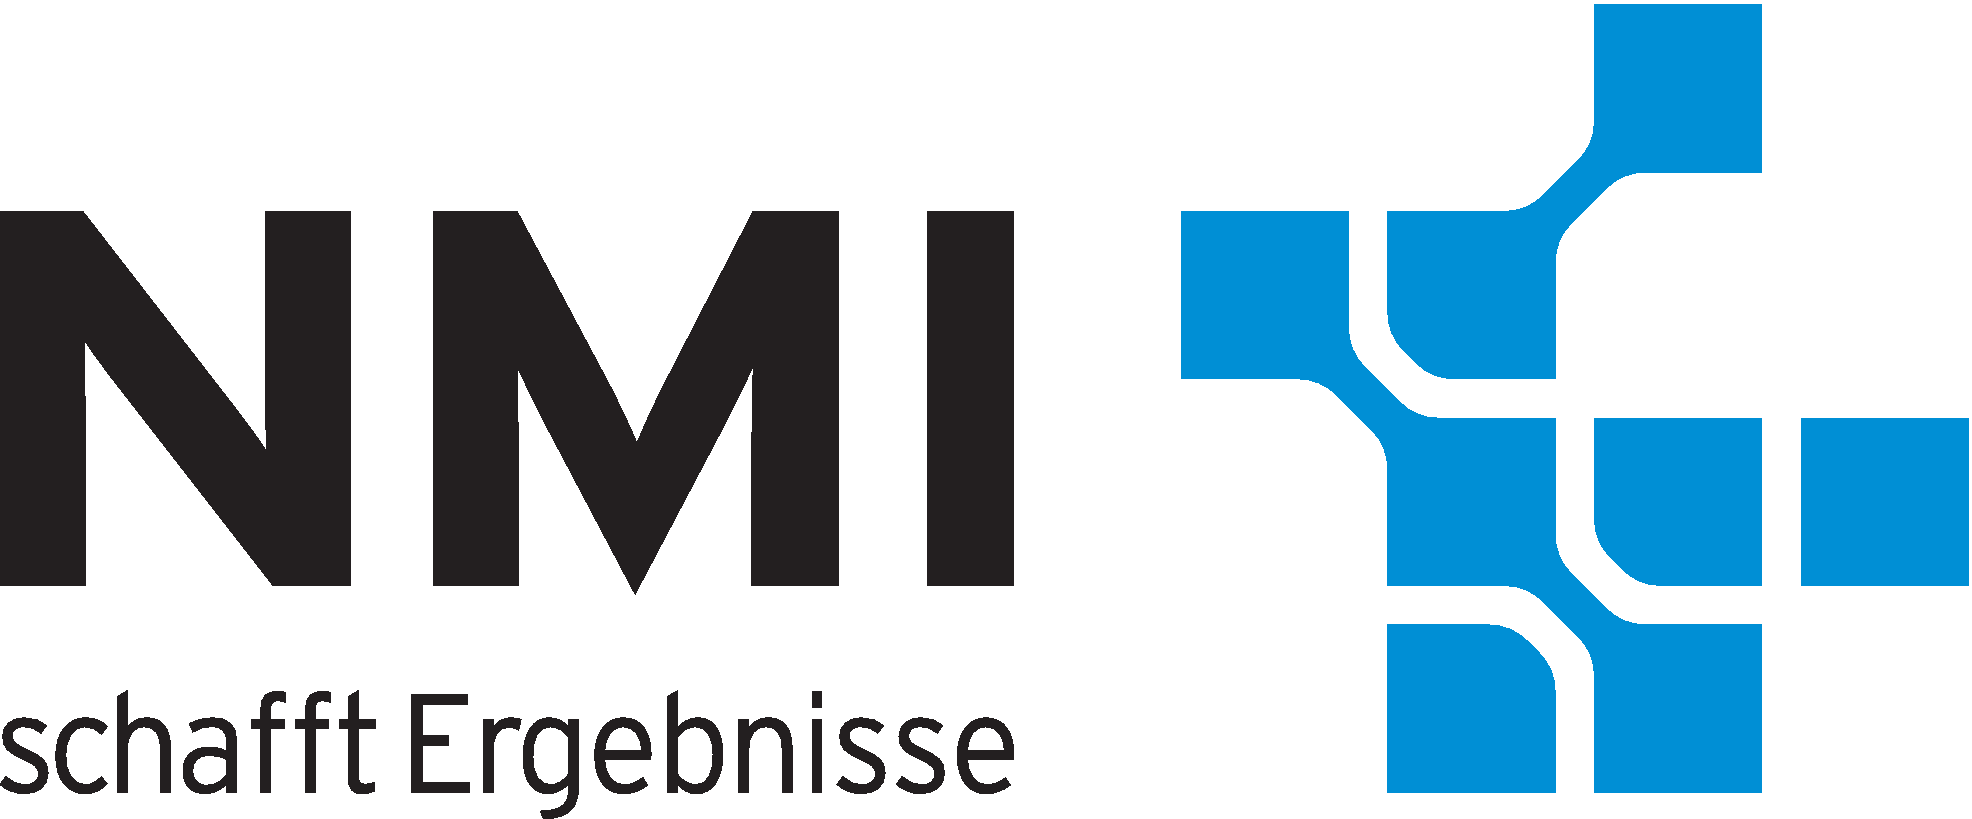 Logo NMI d 4c.png